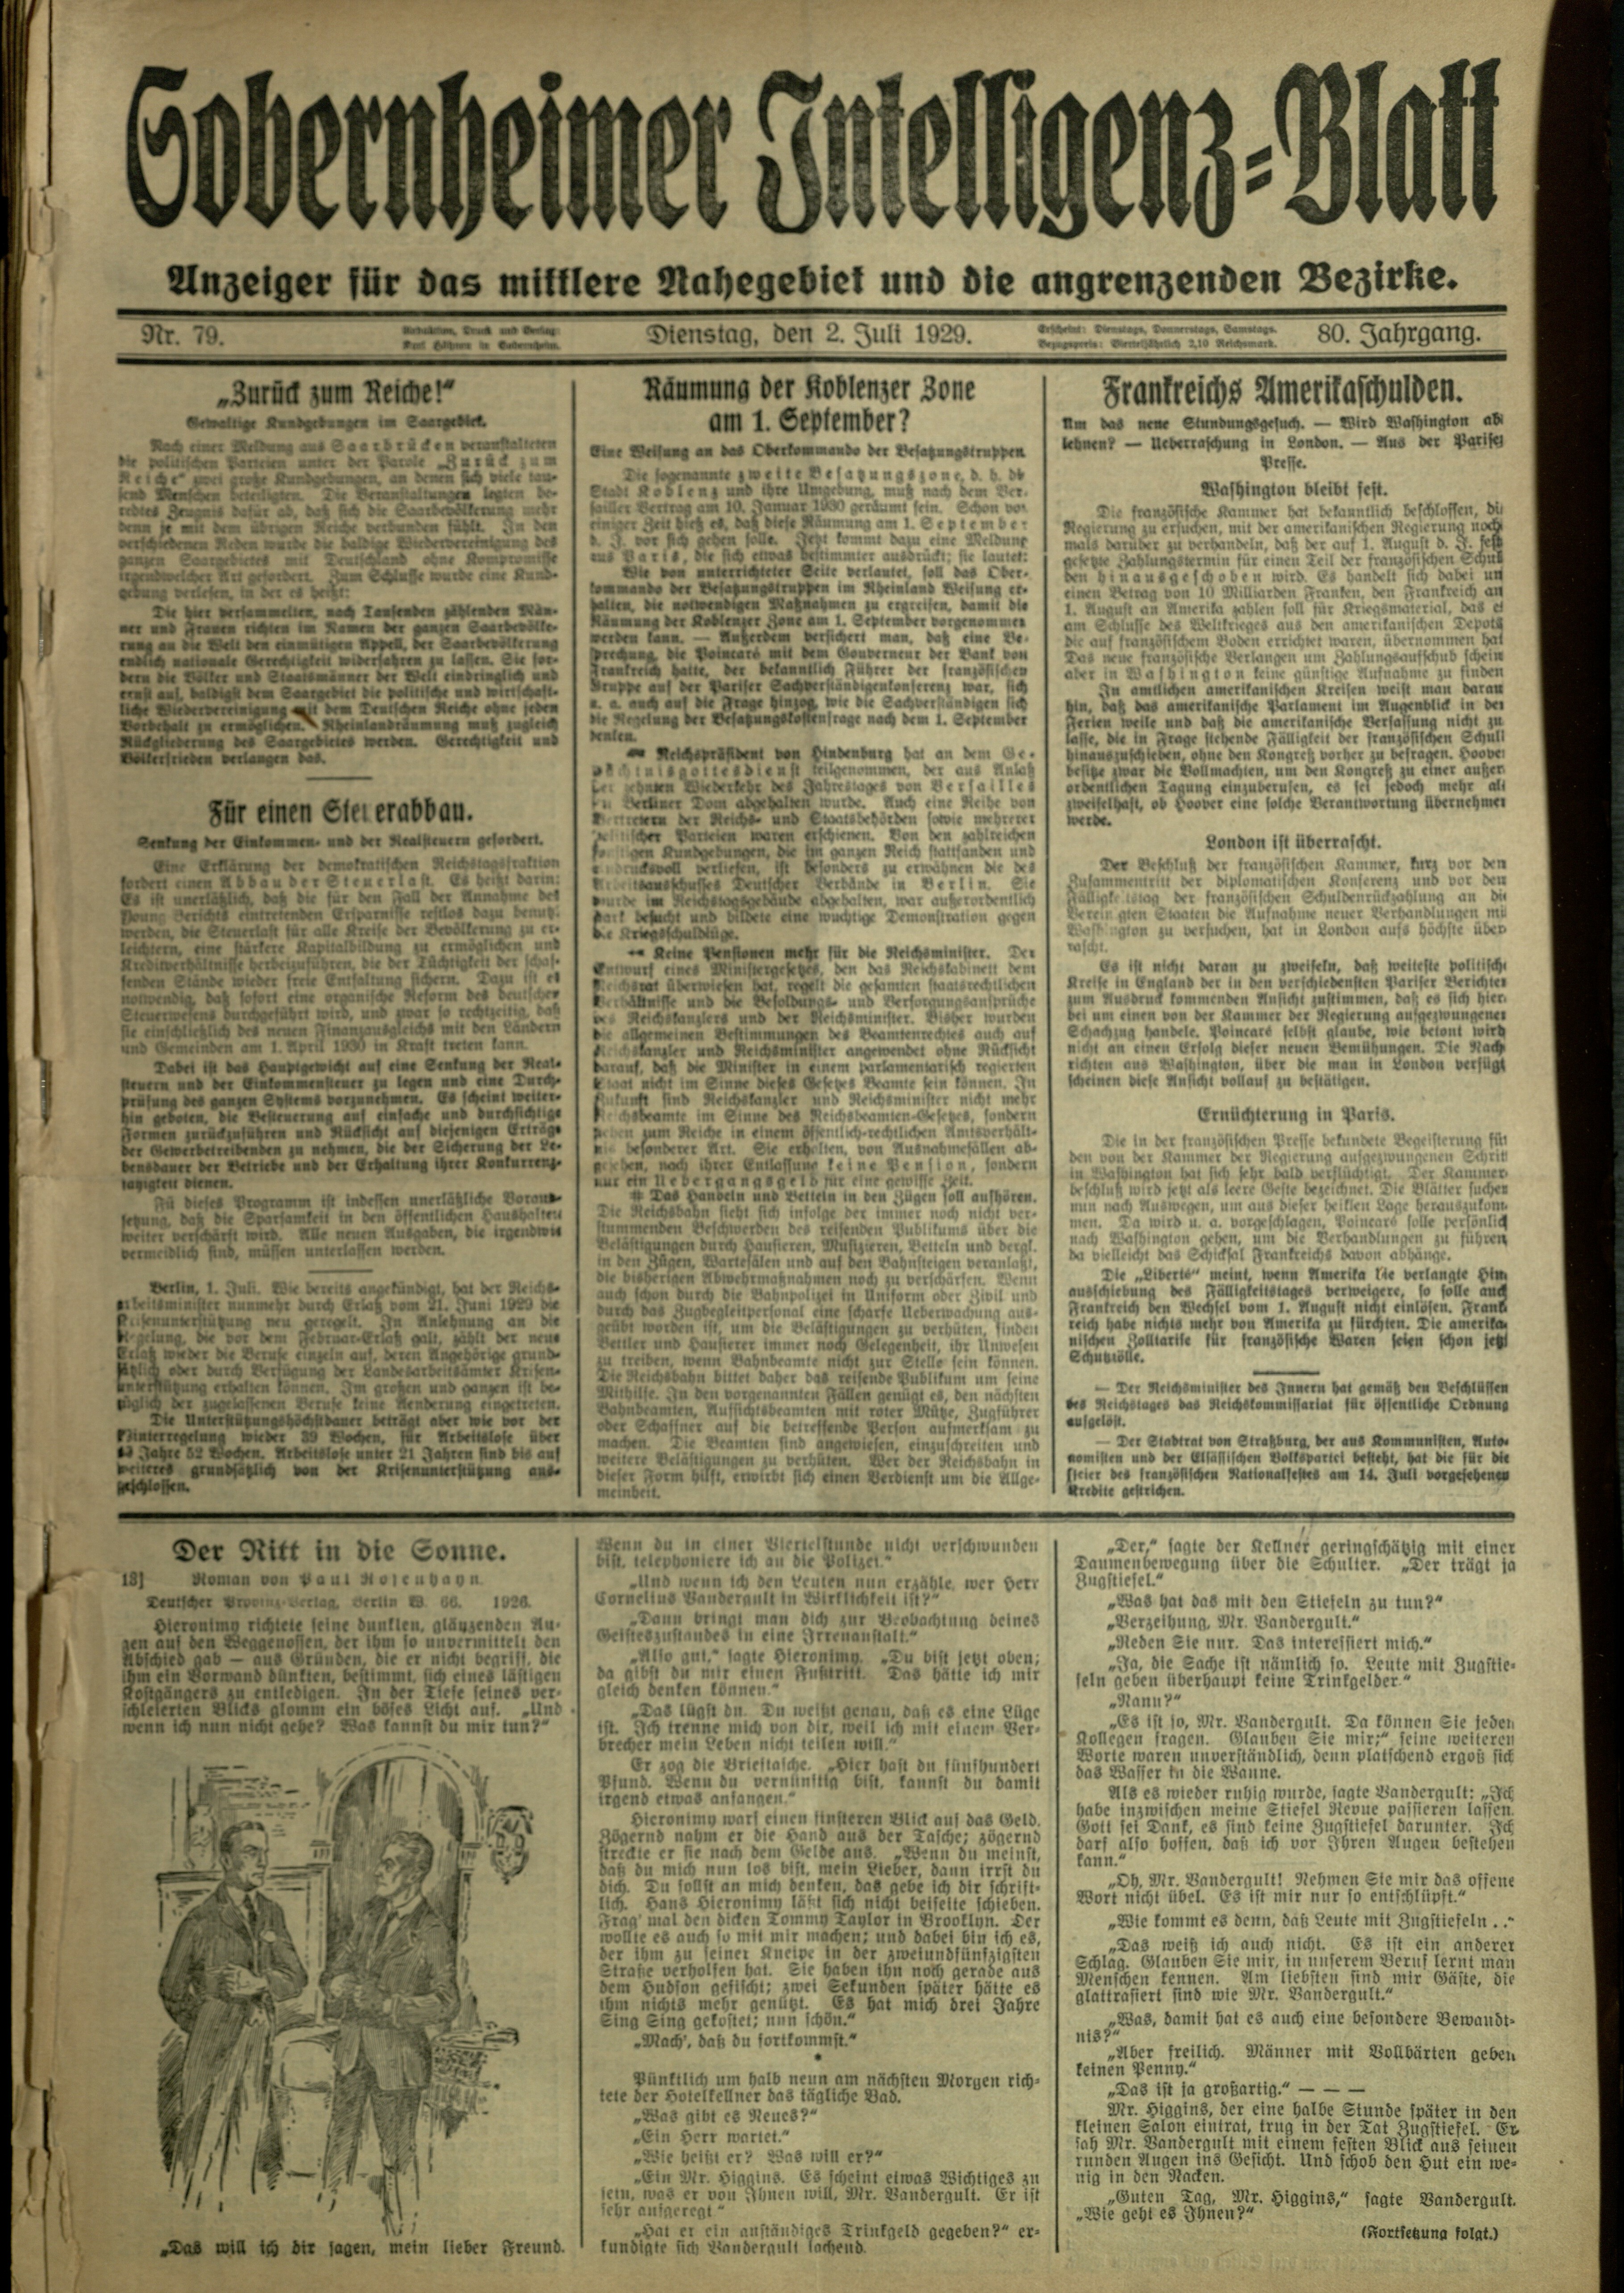 Zeitung: Sobernheimer Intelligenzblatt; Juli 1929, Jg. 80 Nr. 79 (Heimatmuseum Bad Sobernheim CC BY-NC-SA)